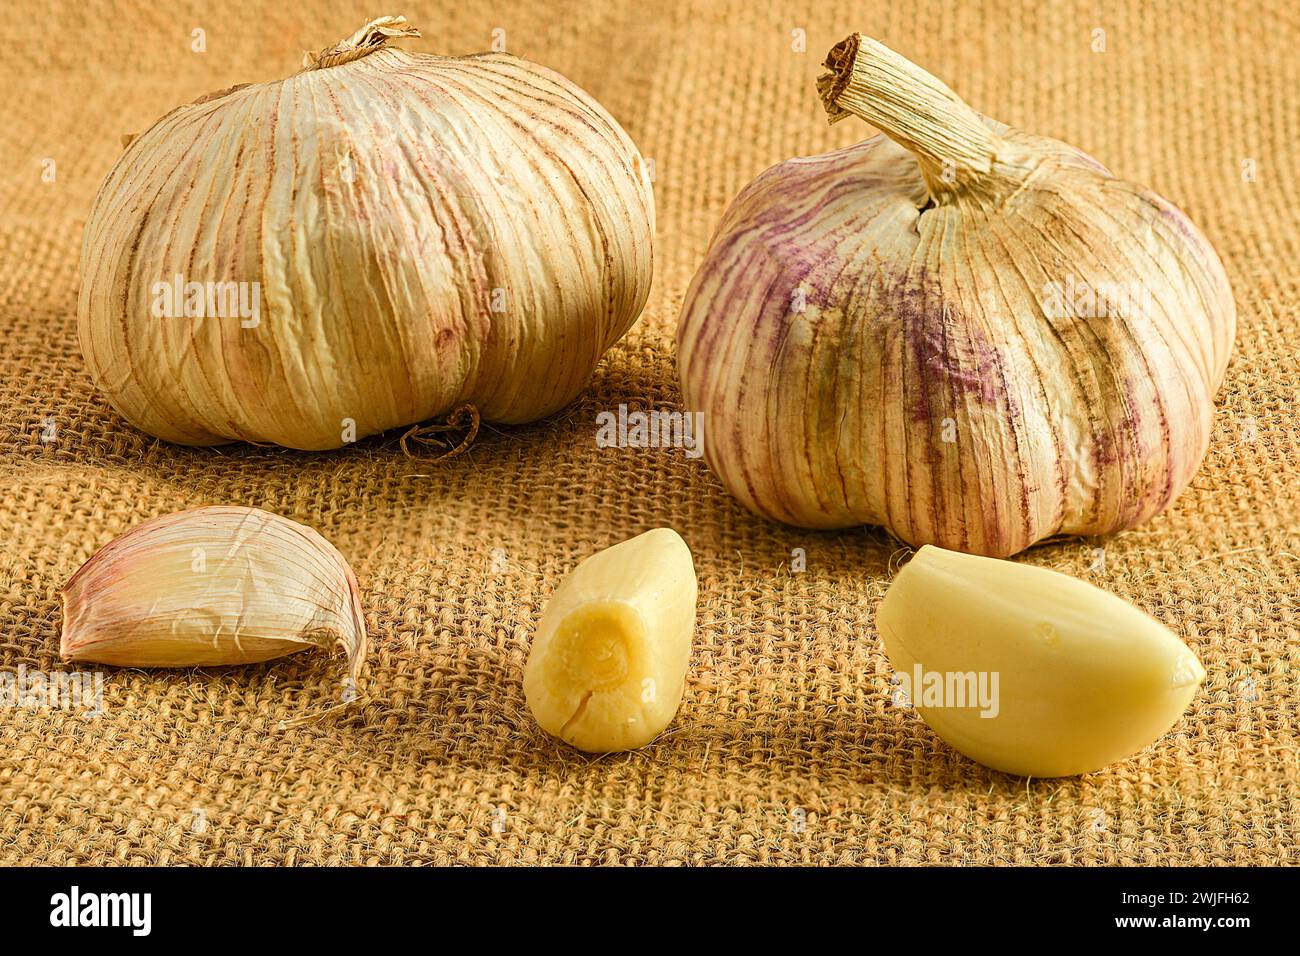 Vetrina degli ingredienti gourmet: Teste d'aglio vivaci su un panno rustico Foto Stock